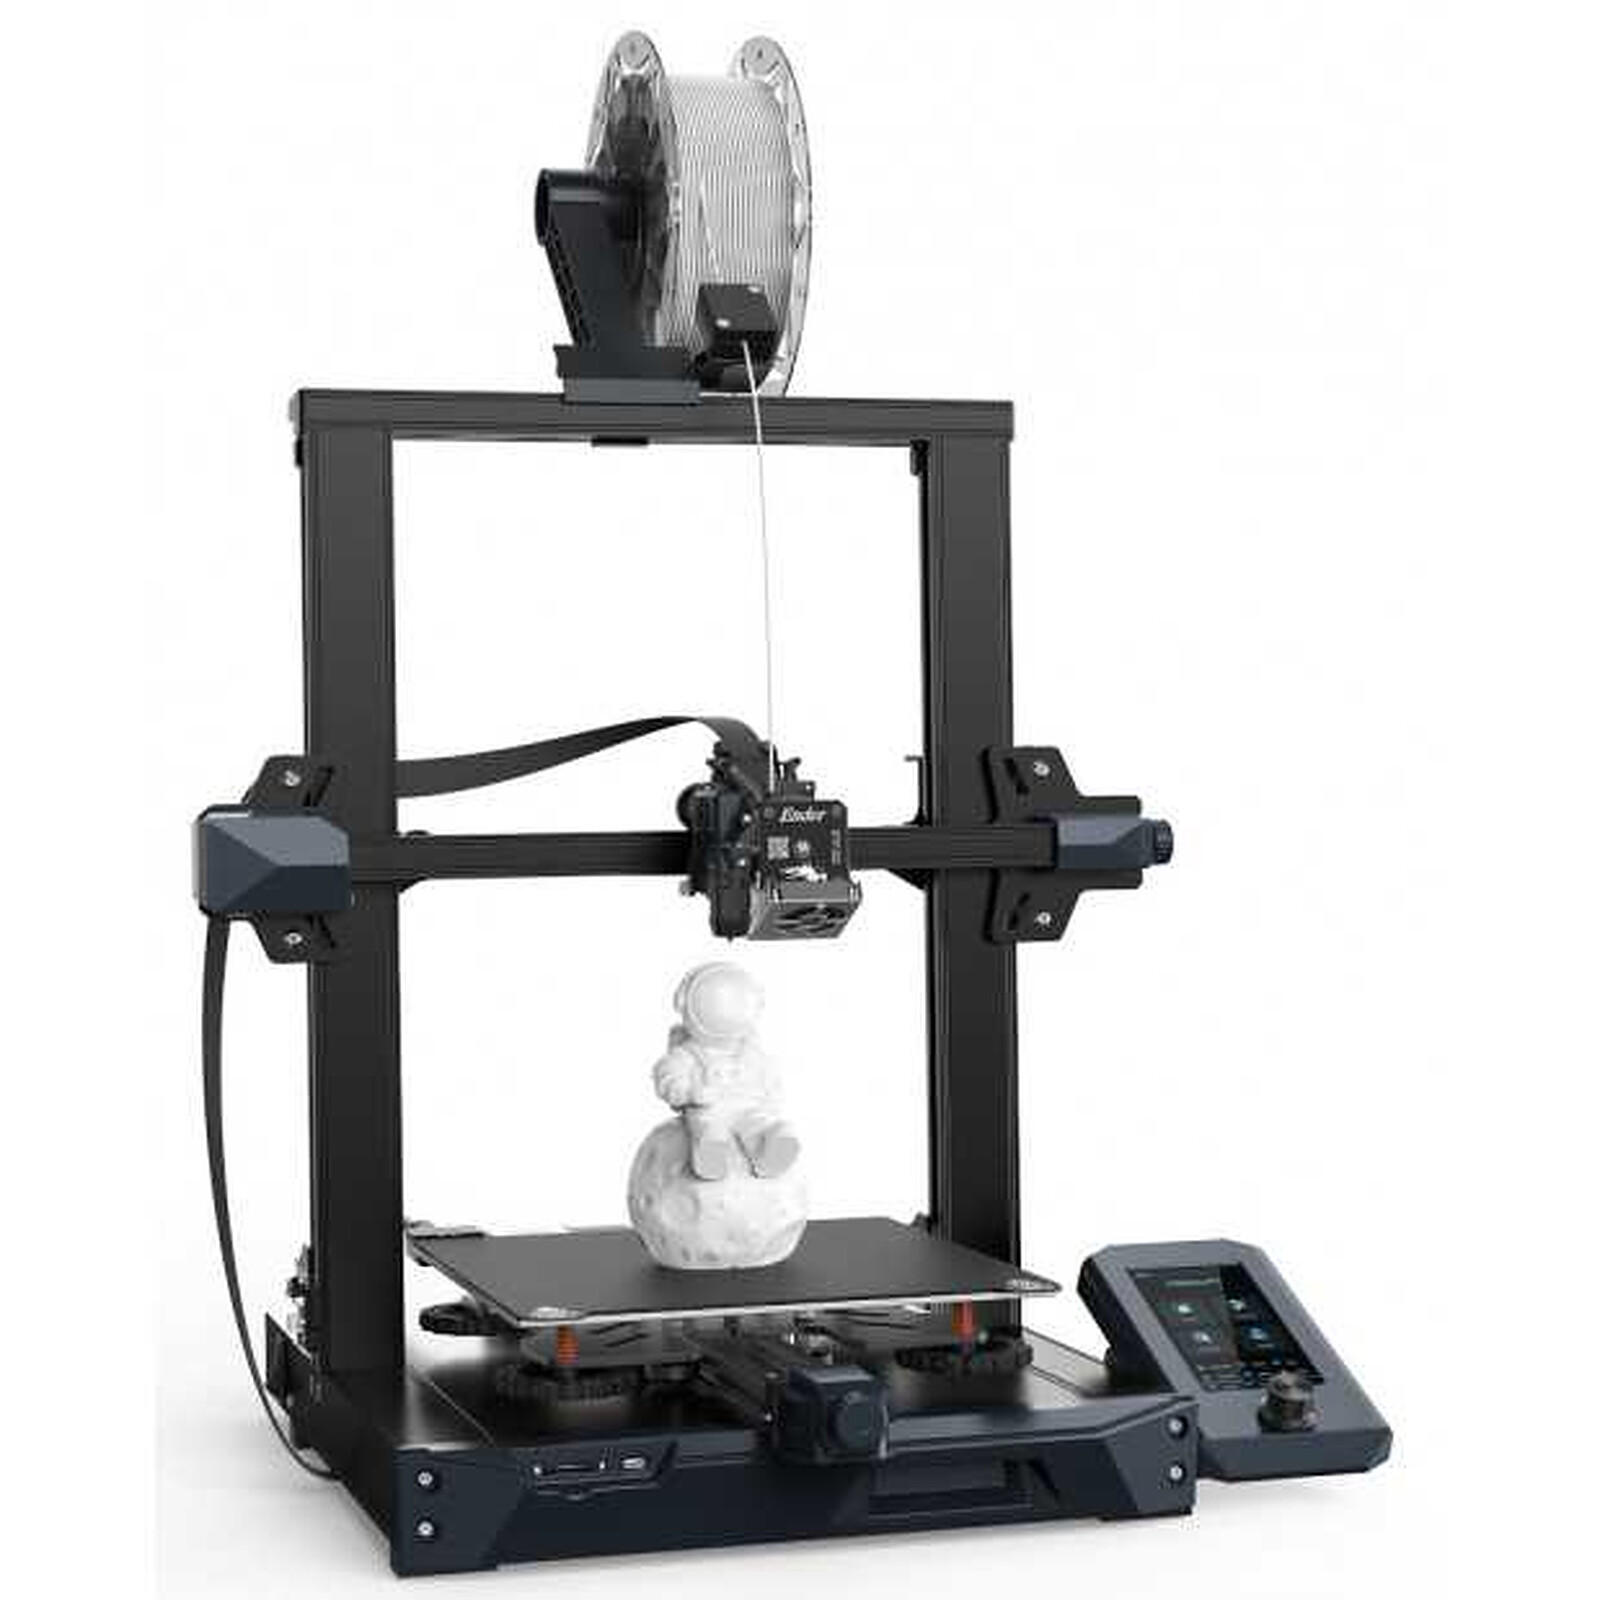 Creality Ender 3 V2 Imprimante 3D avec Carte mère silencieuse